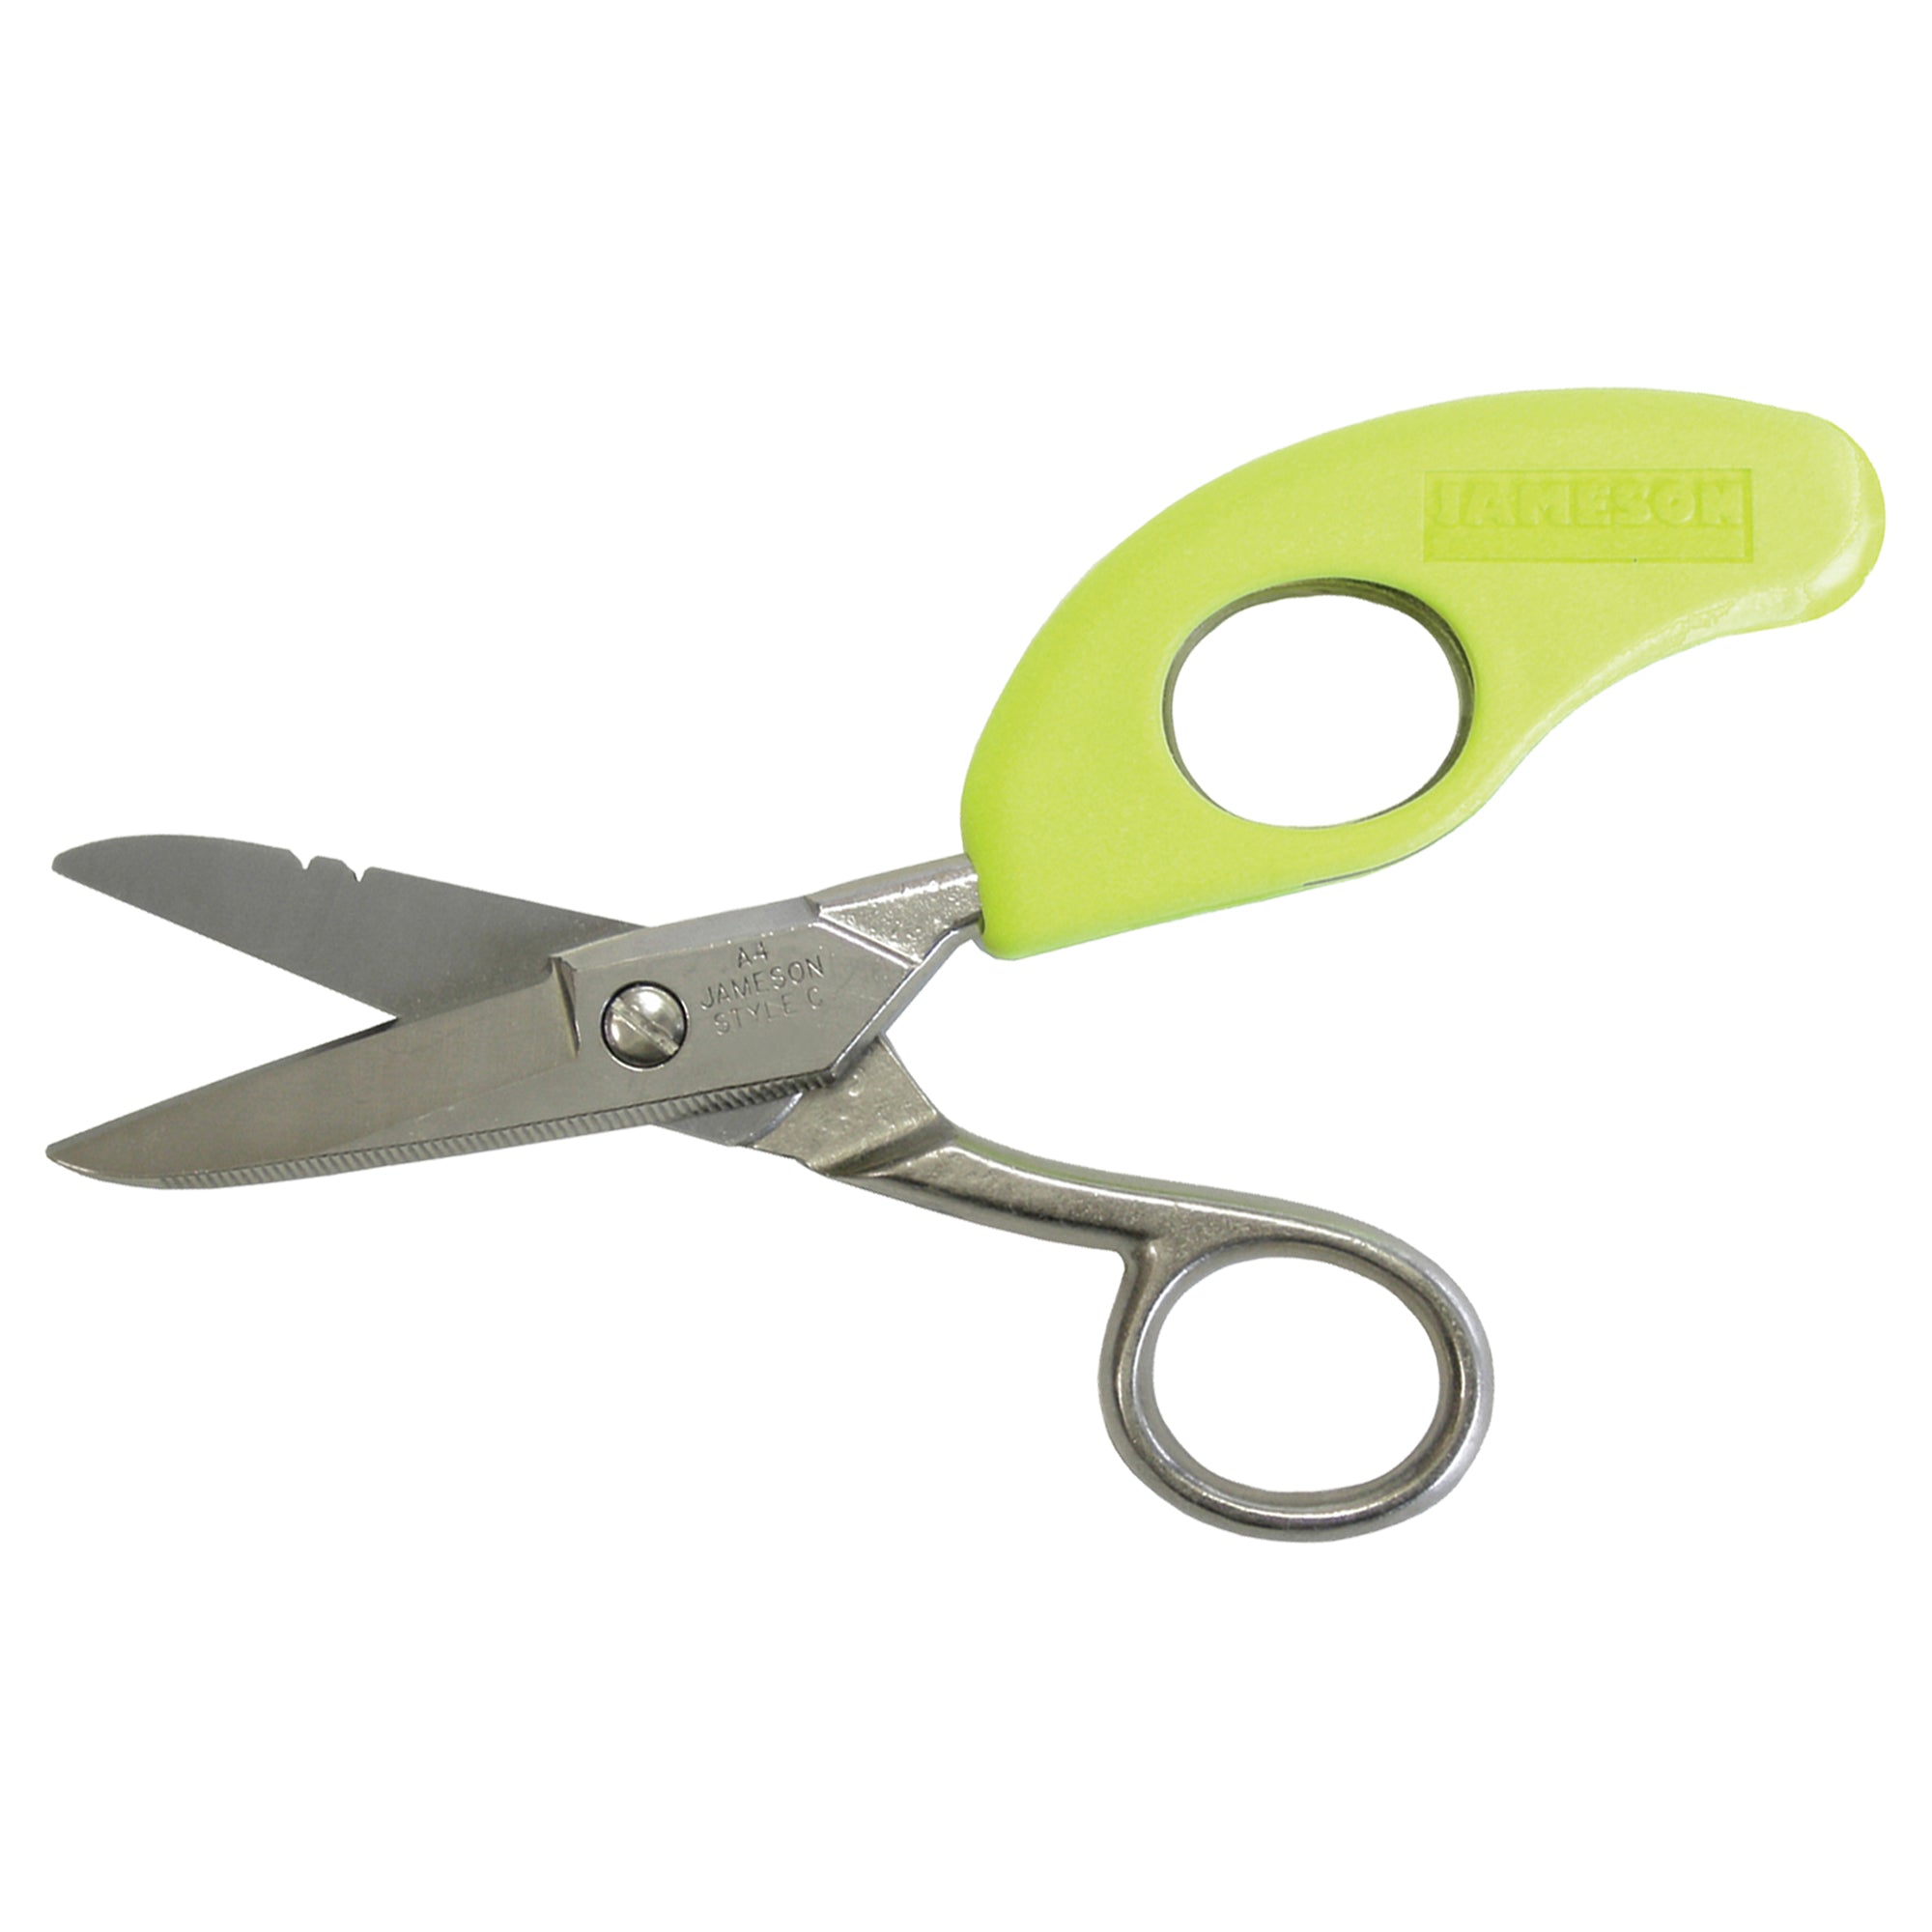 Bernstein 5-353. Ceramic scissors with plastic handle